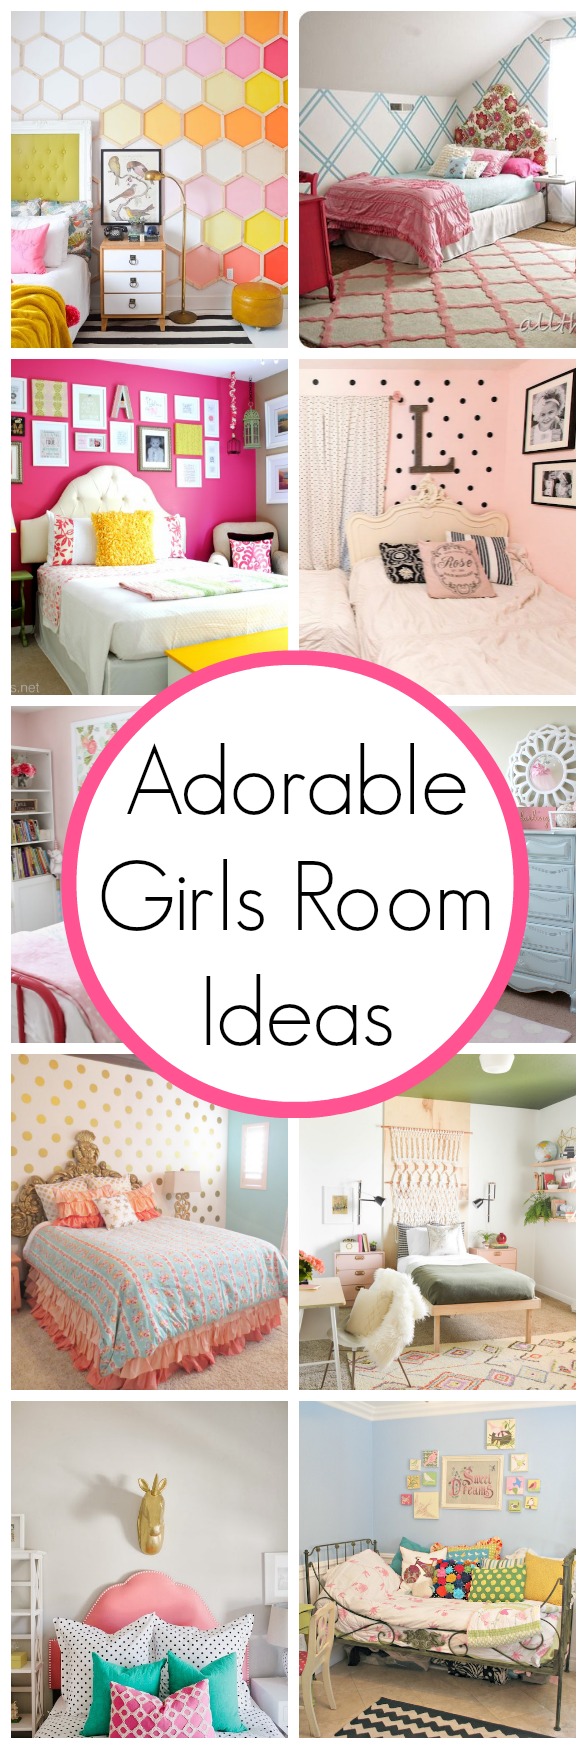 15 Adorable Girl’s Room Ideas